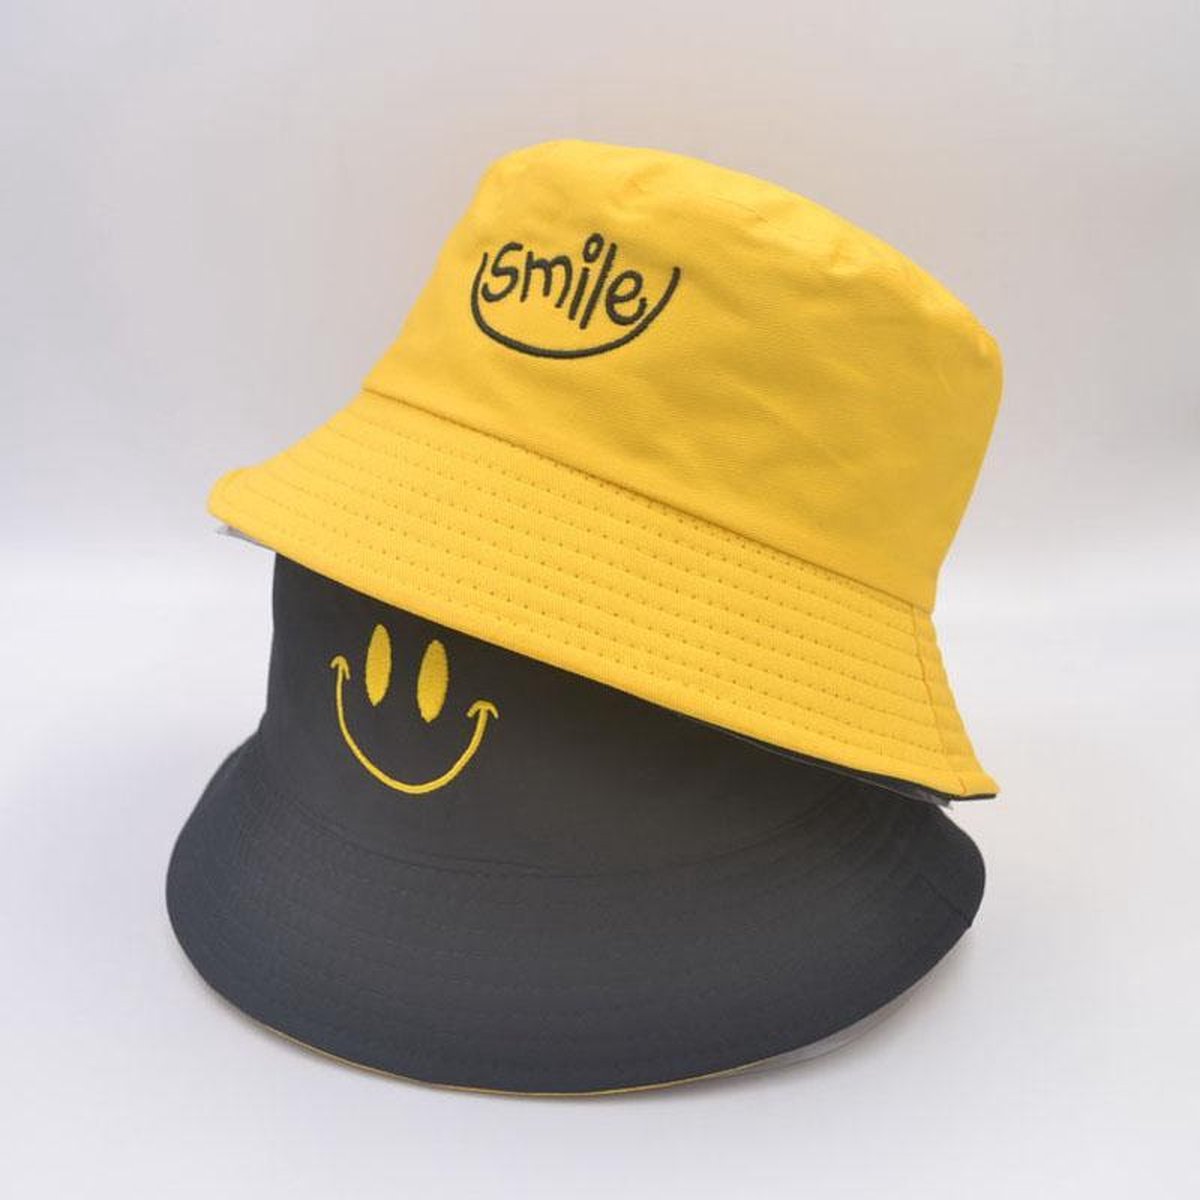 Reversible bucket hat - vissershoedje - zonnehoed - smiley - geel/zwart -  omkeerbaar | bol